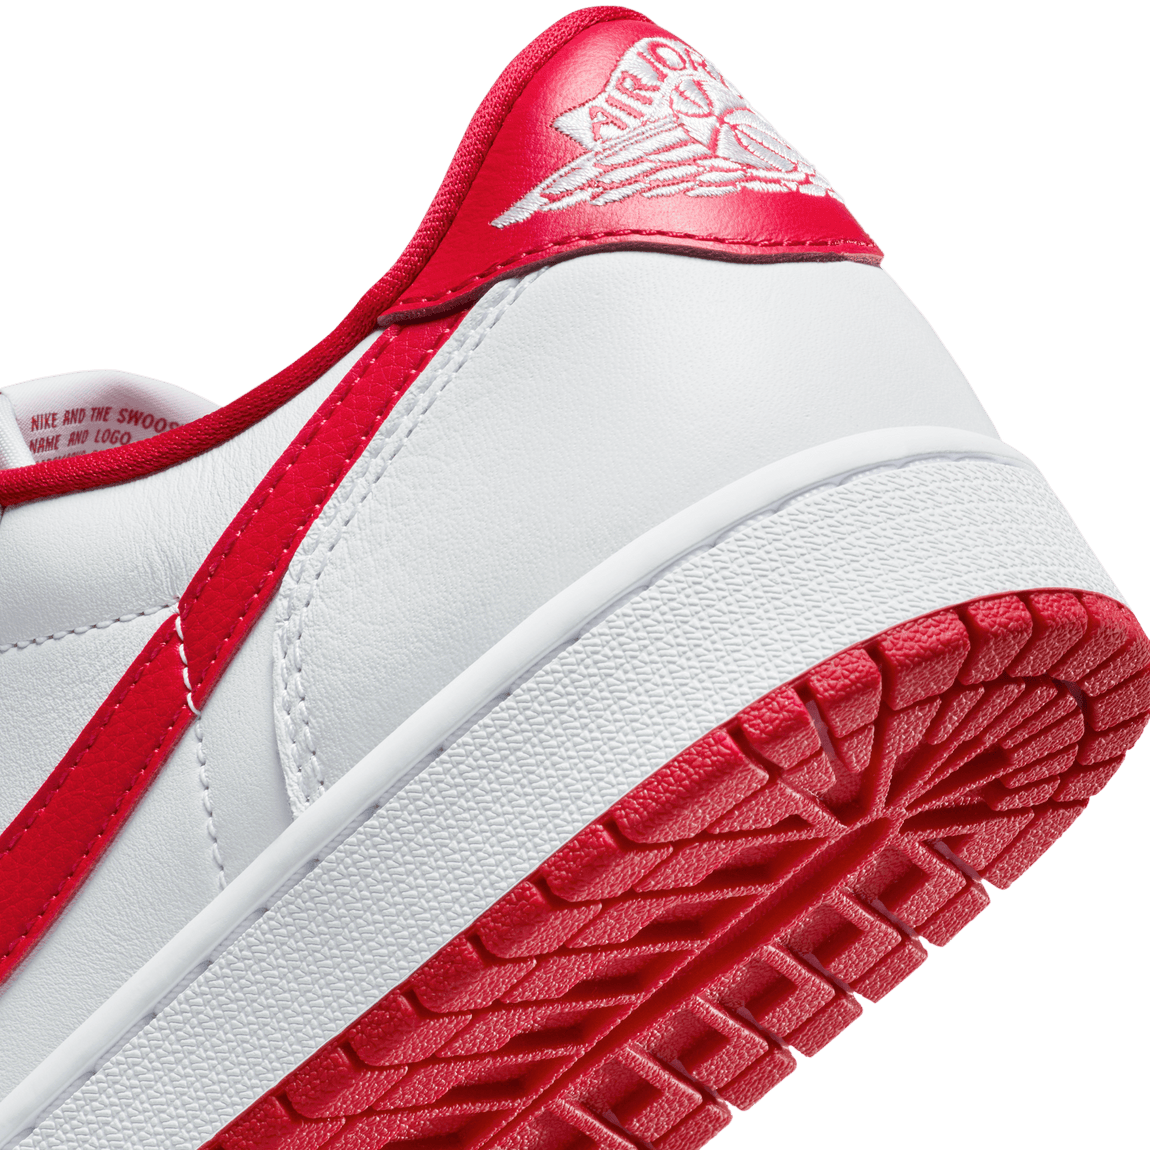 Air Jordan 1 Retro Low OG (White/University Red-White) 10/13 - Air Jordan 1 Retro Low OG (White/University Red-White) 10/13 - 